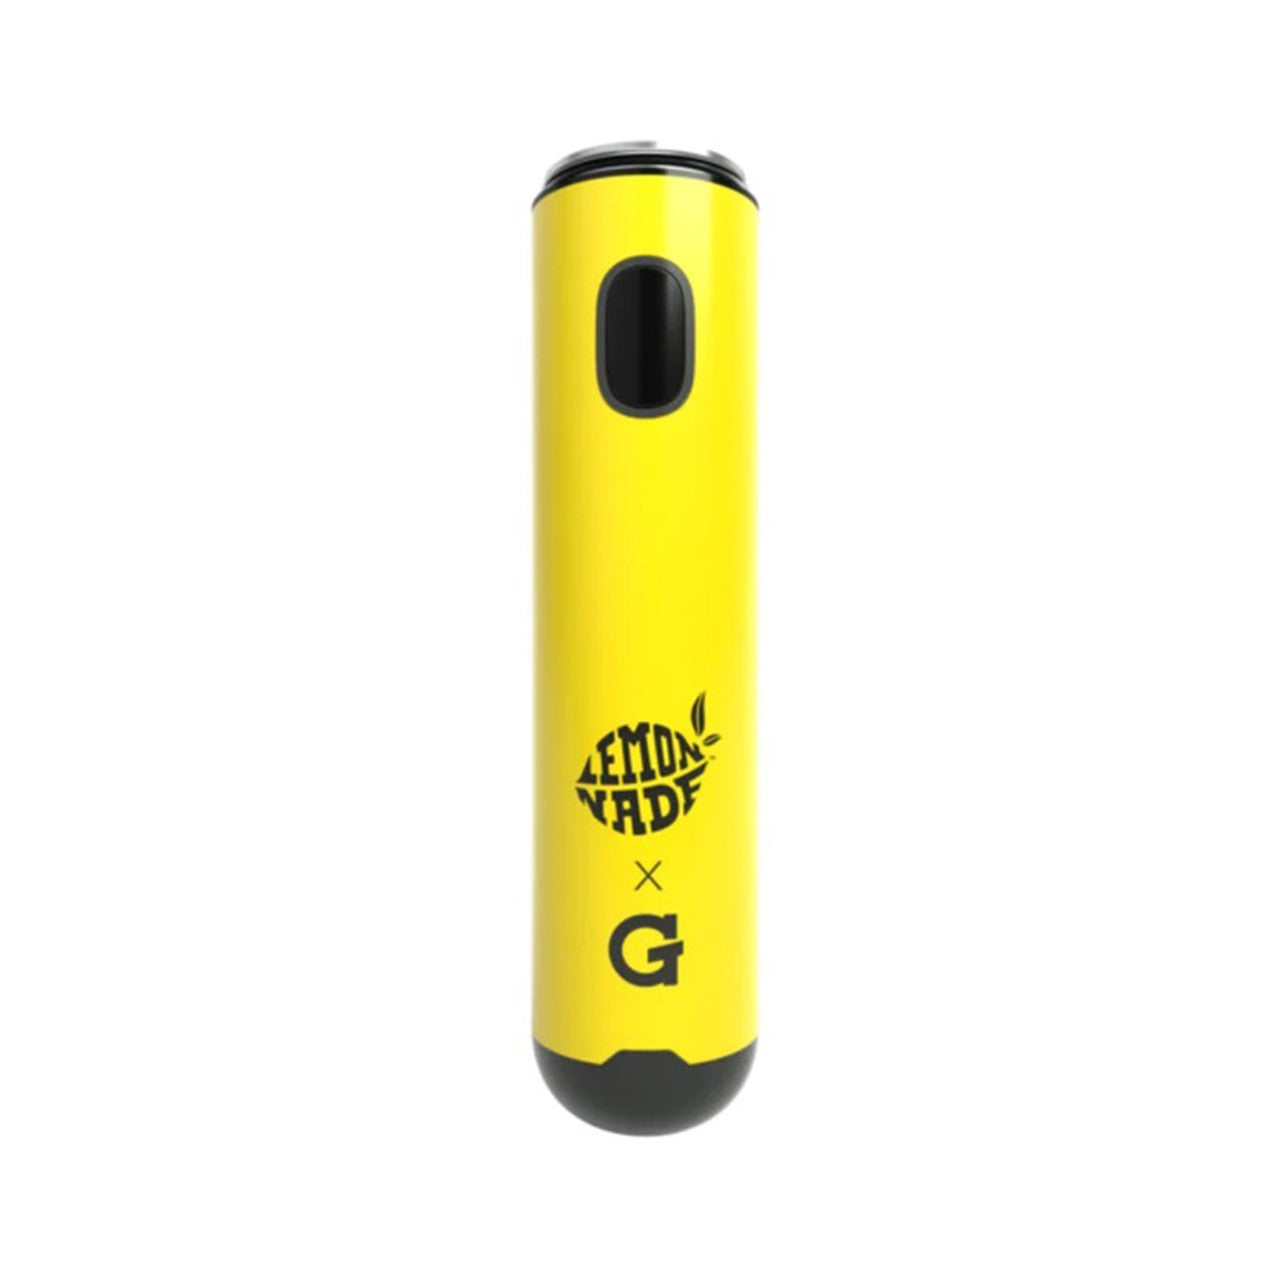 G Pen - Micro Plus Replacement Battery - Online Vape Shop | Alternative pods | Affordable Vapor Store | Vape Disposables